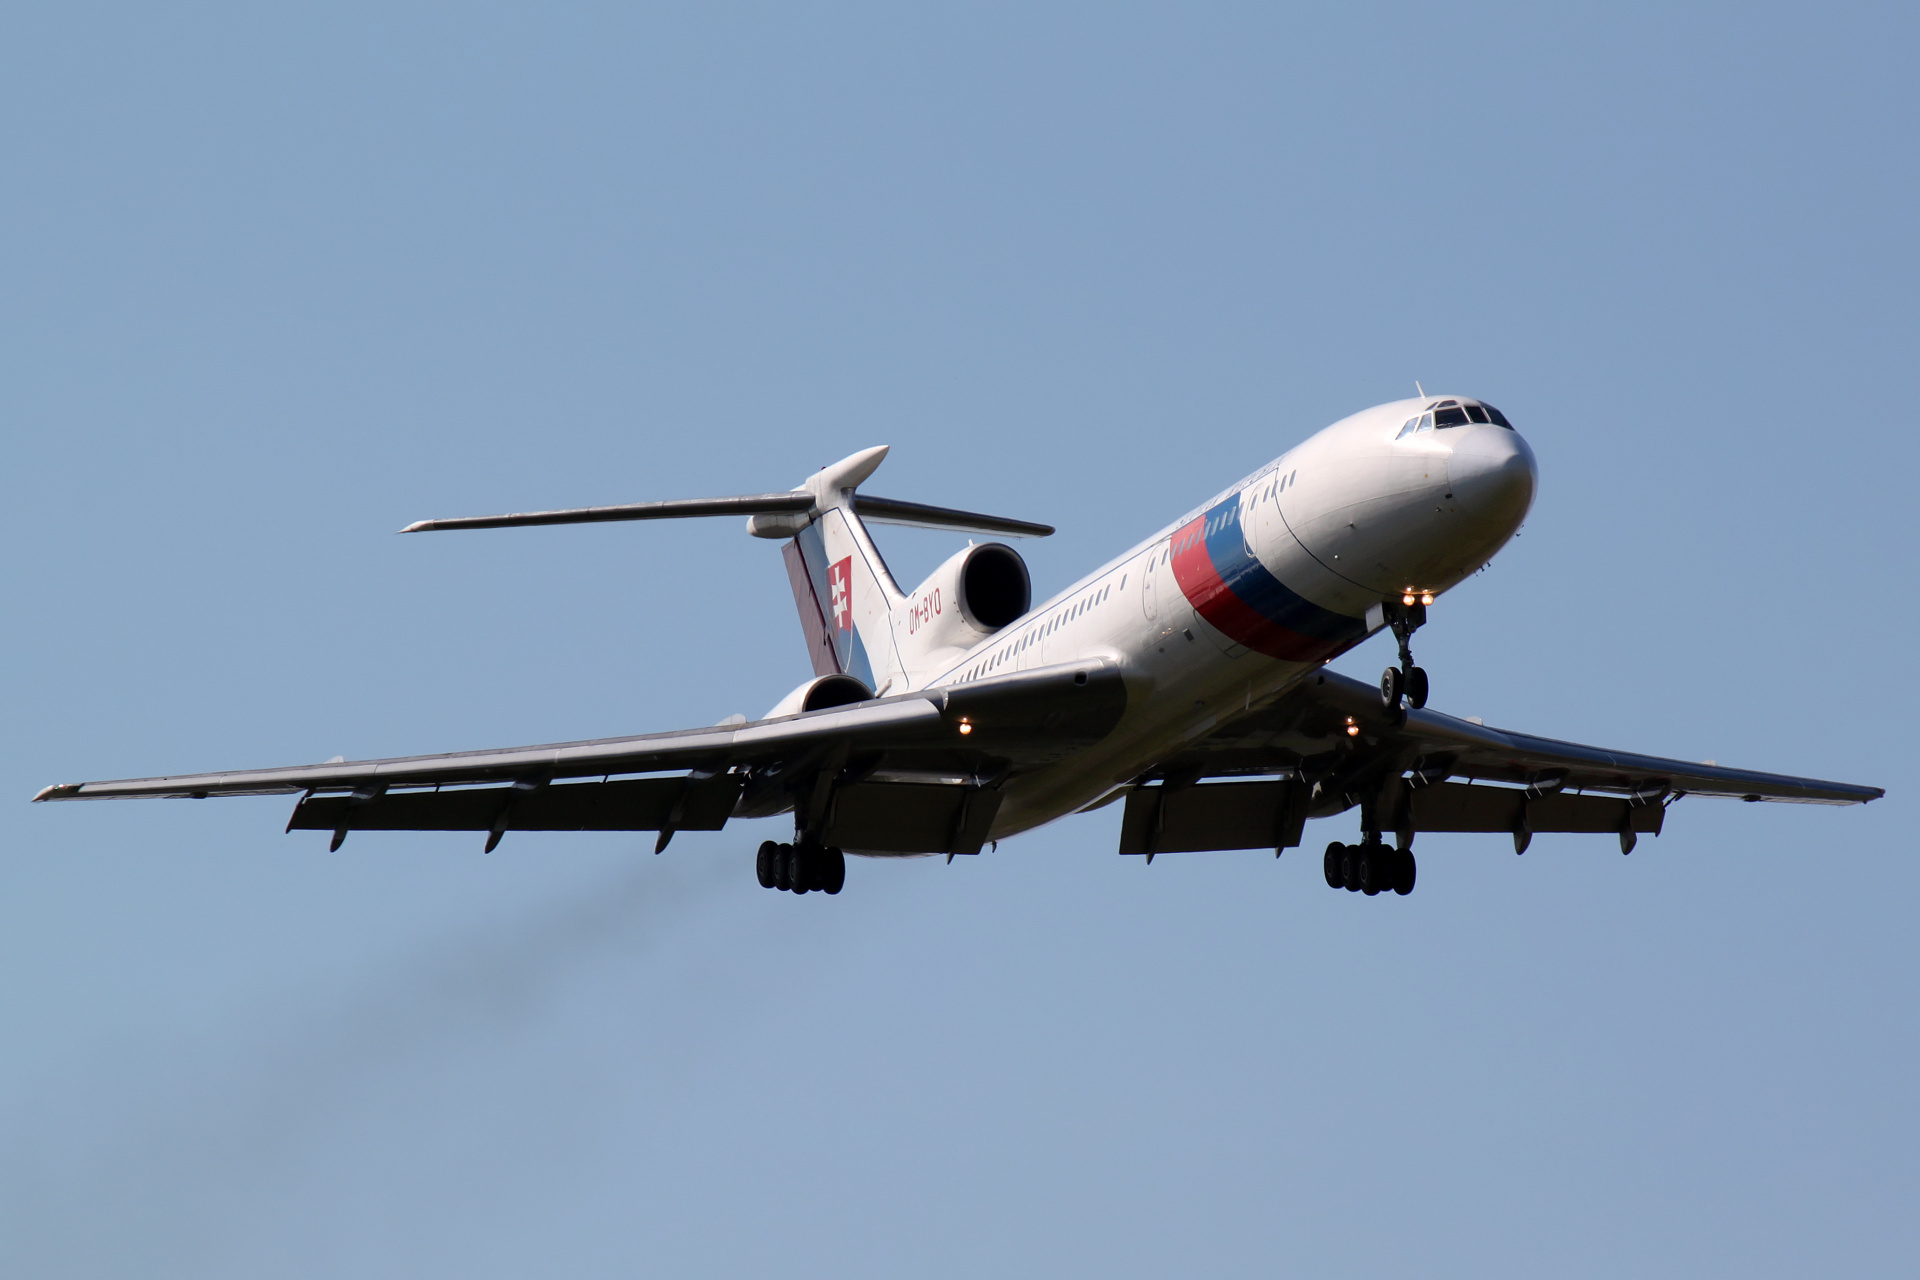 OM-BYO (Samoloty » Spotting na EPWA » Tupolew Tu-154M » Słowackie Siły Powietrzne)